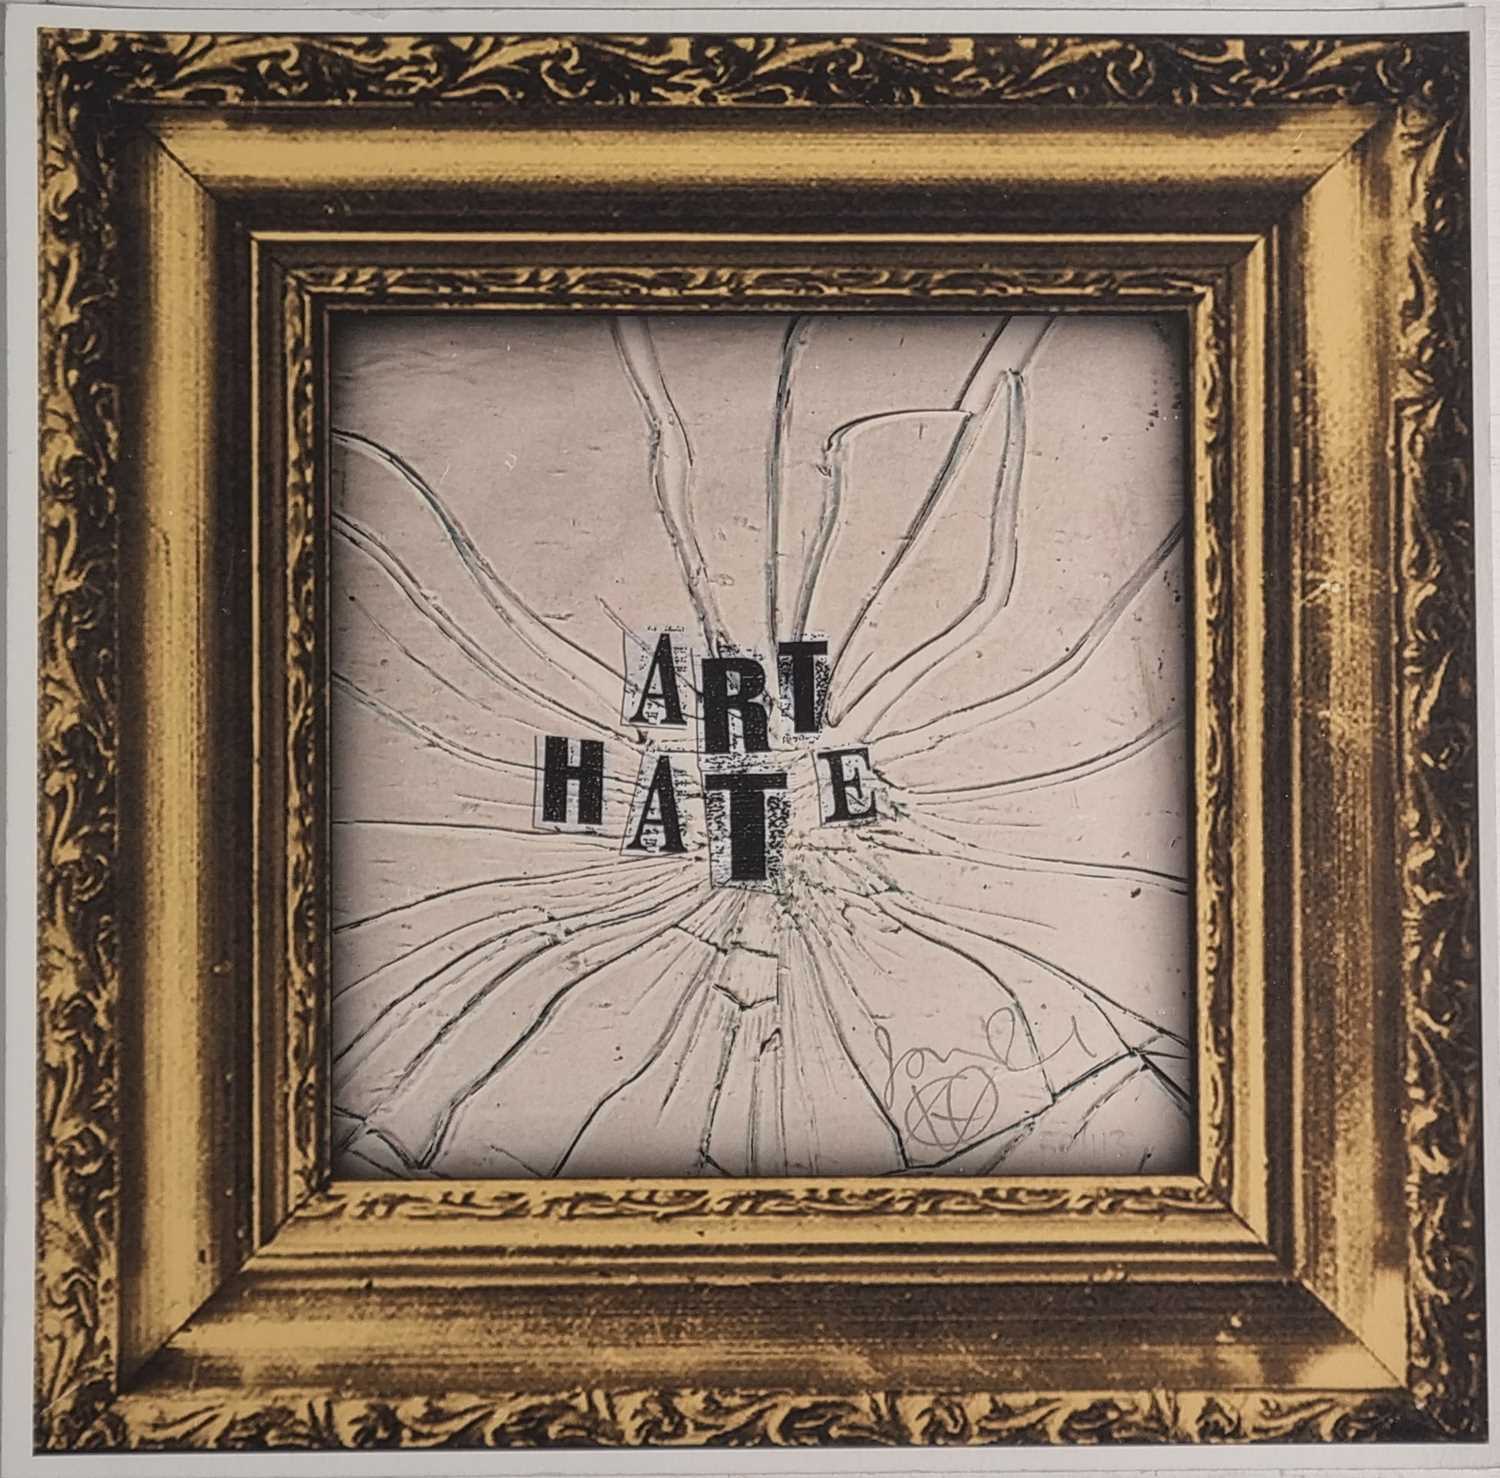 ƚ Jamie REID (British b. 1947) Art Hate, Limited edition digital print, Signed and numbered 50/113